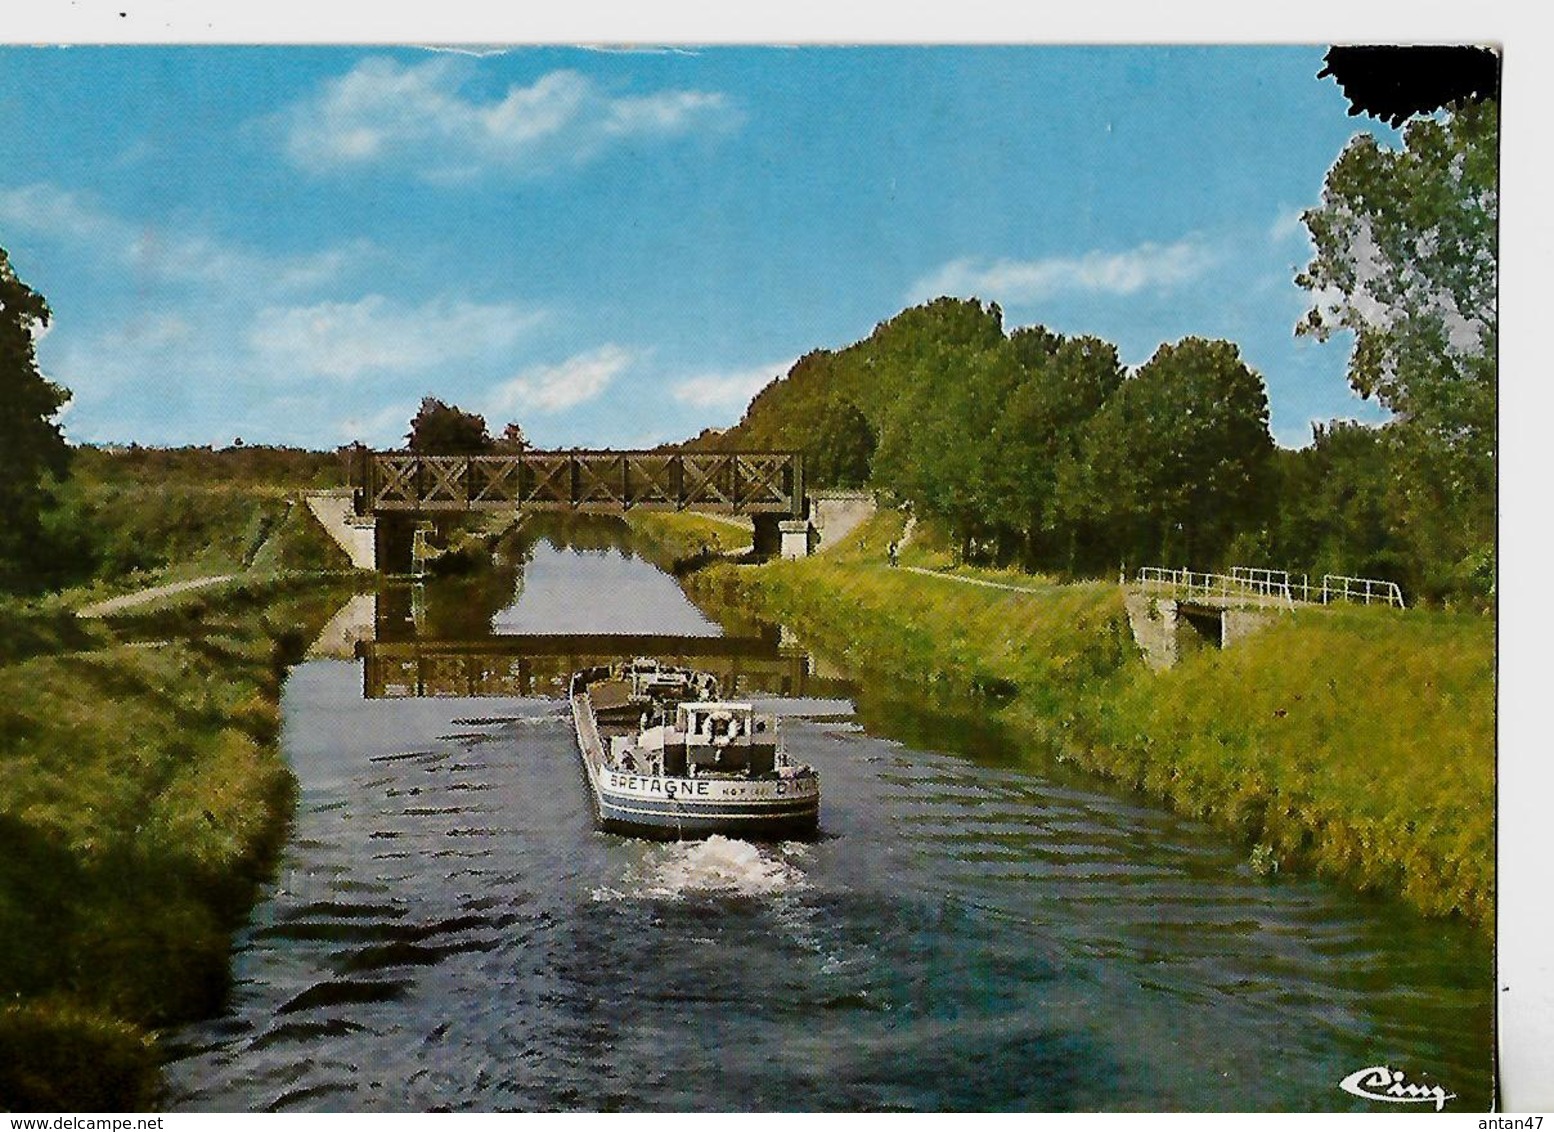 Carte 1986 / 44 BLAIN Canal De Nantes à Brest / Péniche BRETAGNE-DINAN - Houseboats